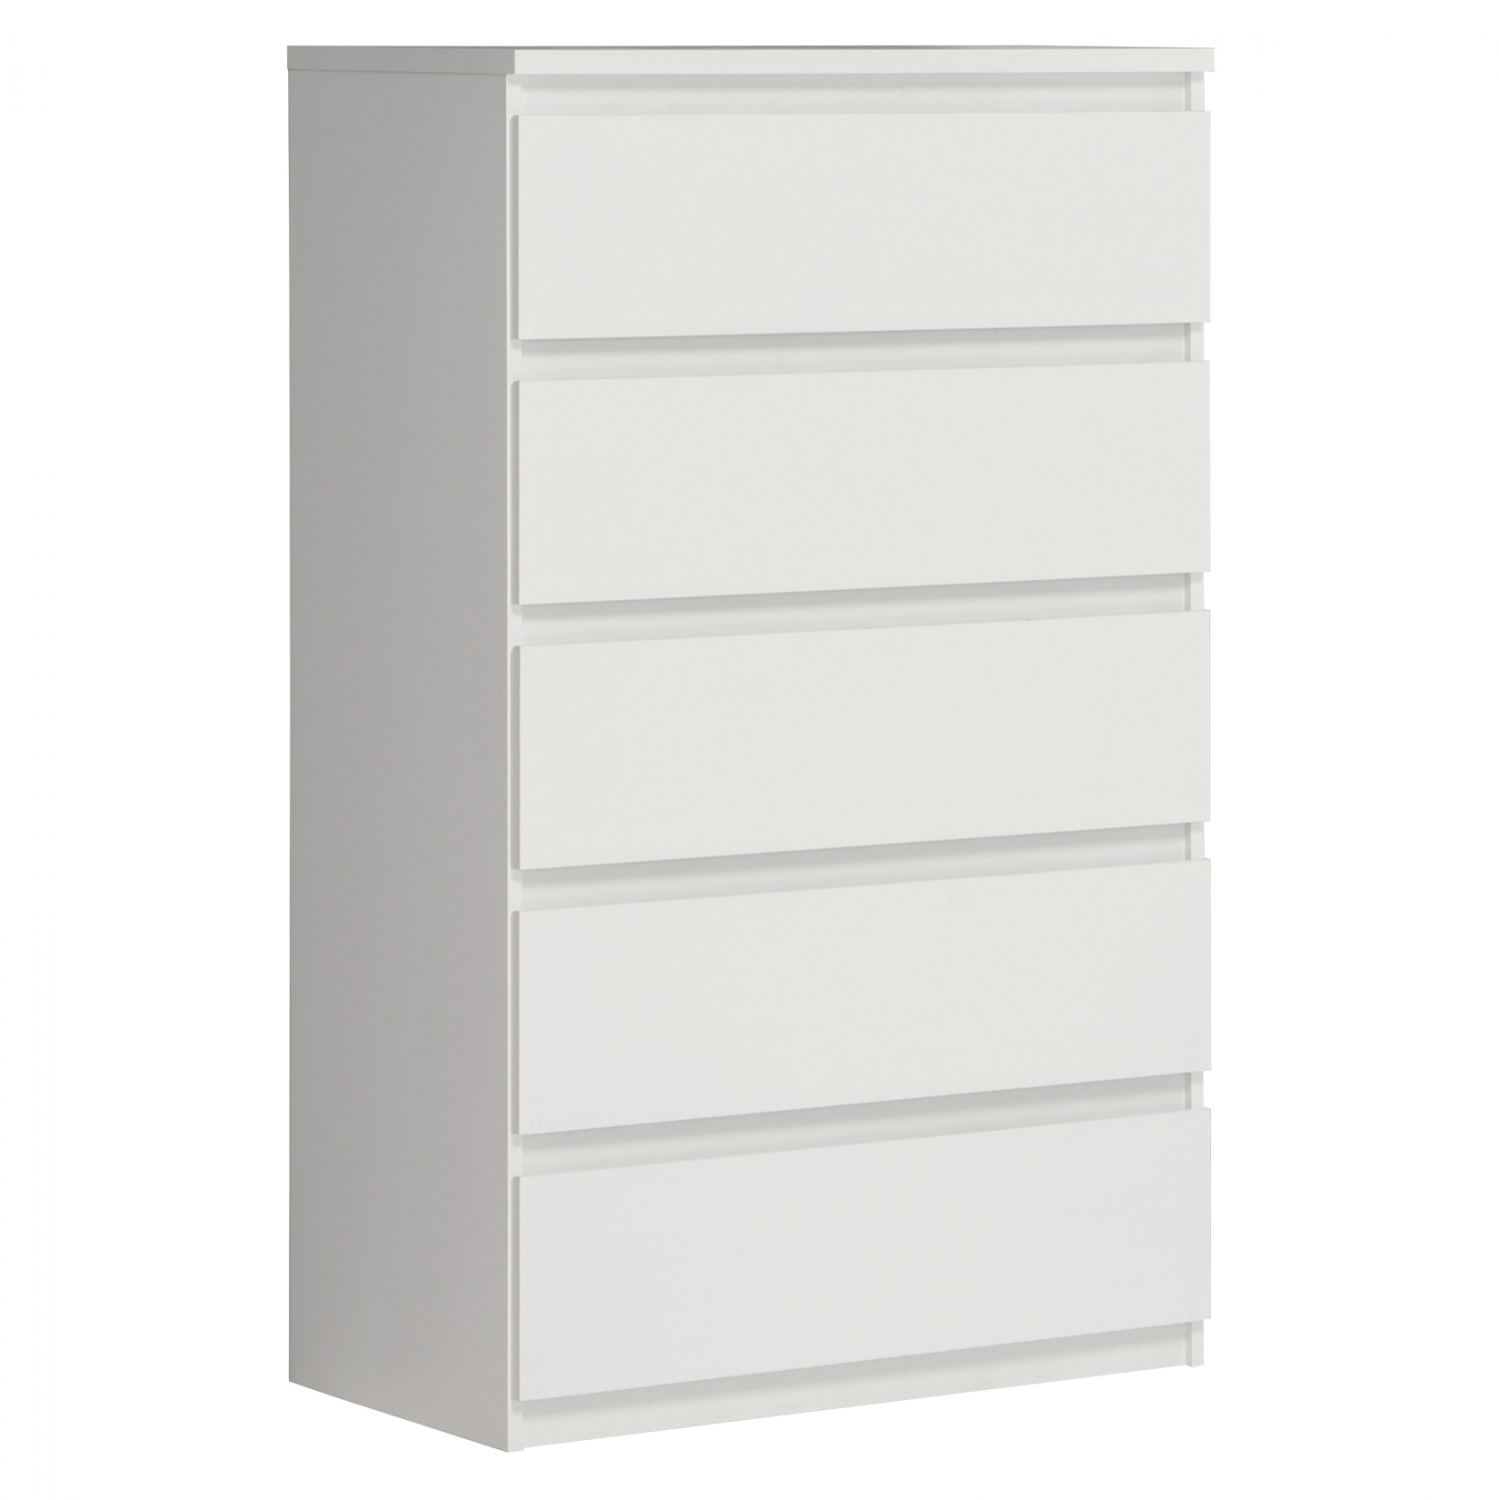 Συρταριέρα “BRANCO” με 5 συρτάρια σε λευκό χρώμα 77.2×42.2×128.1